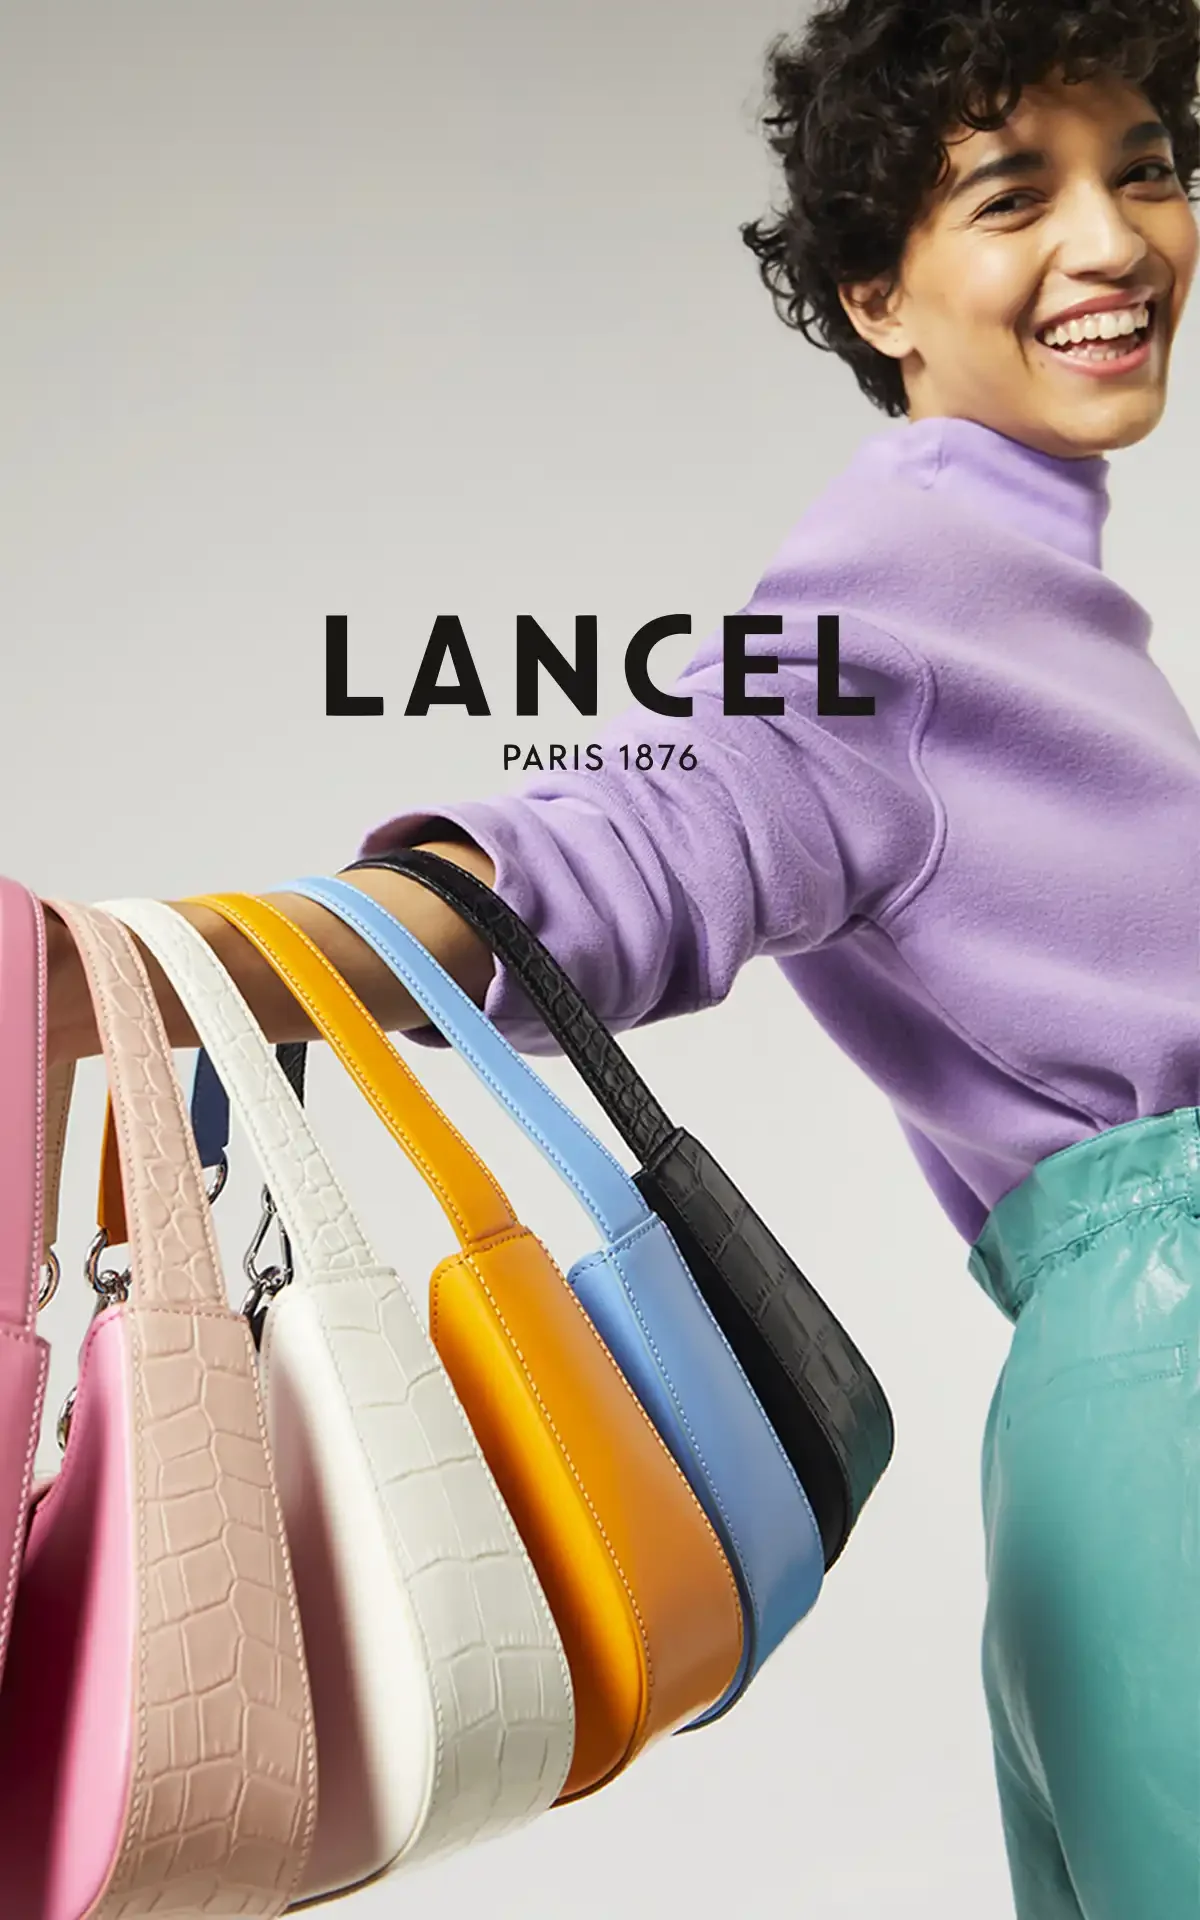 Lancel at Le Salon